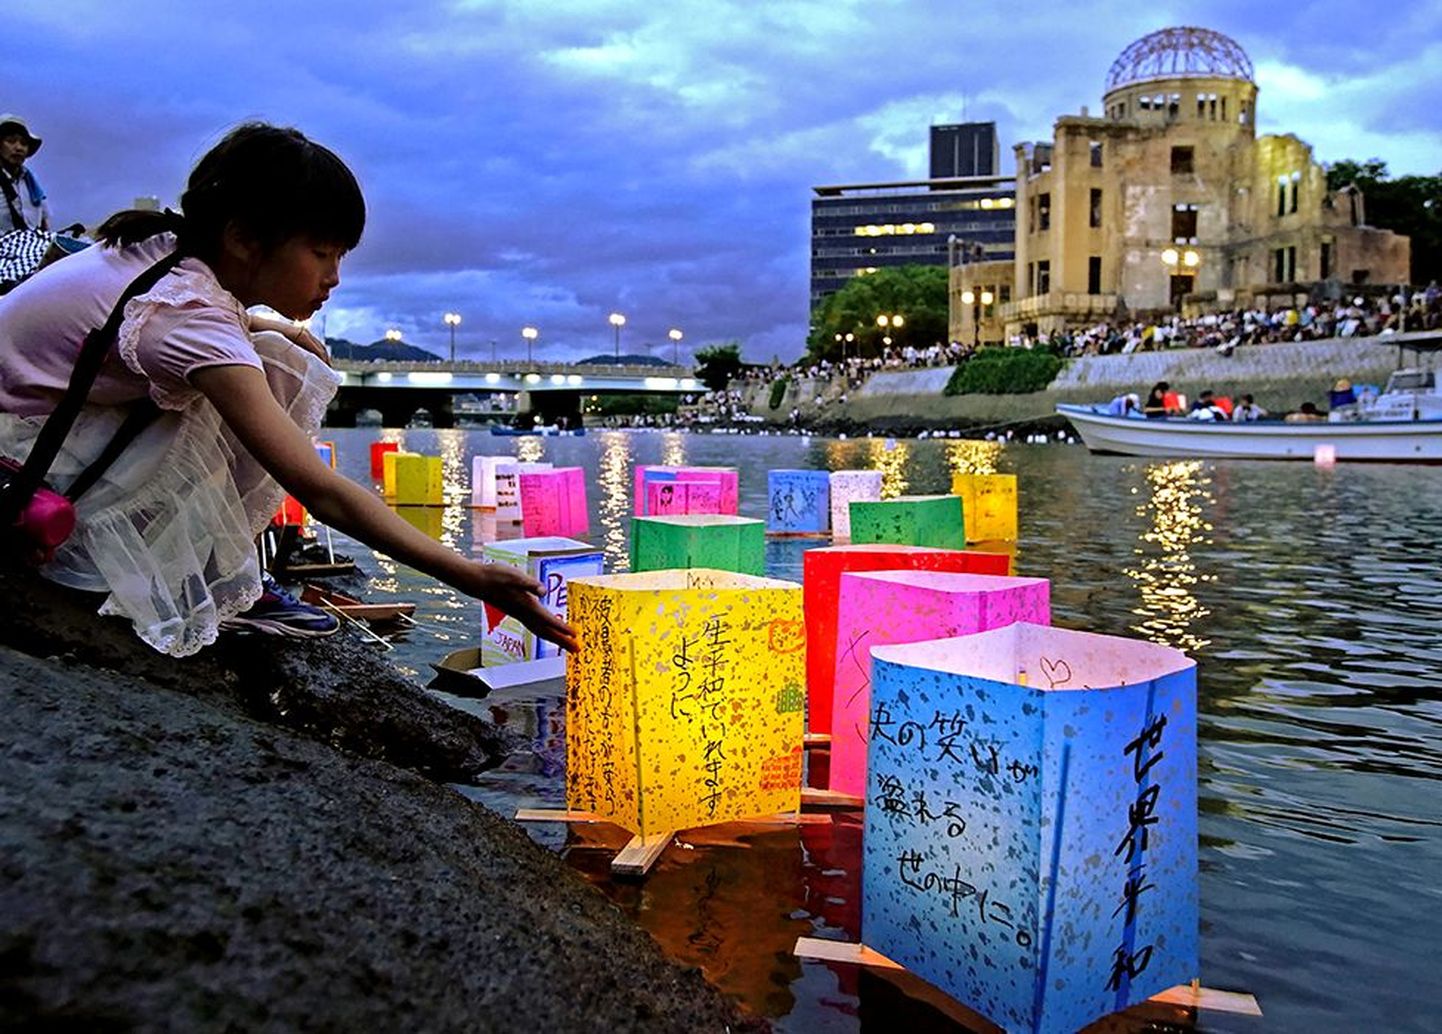 В прошлогоднюю годовщину взрыва на берегу реки Мотоясу напротив Атомного купола в Хиросиме, как всегда, появились бумажные фонарики